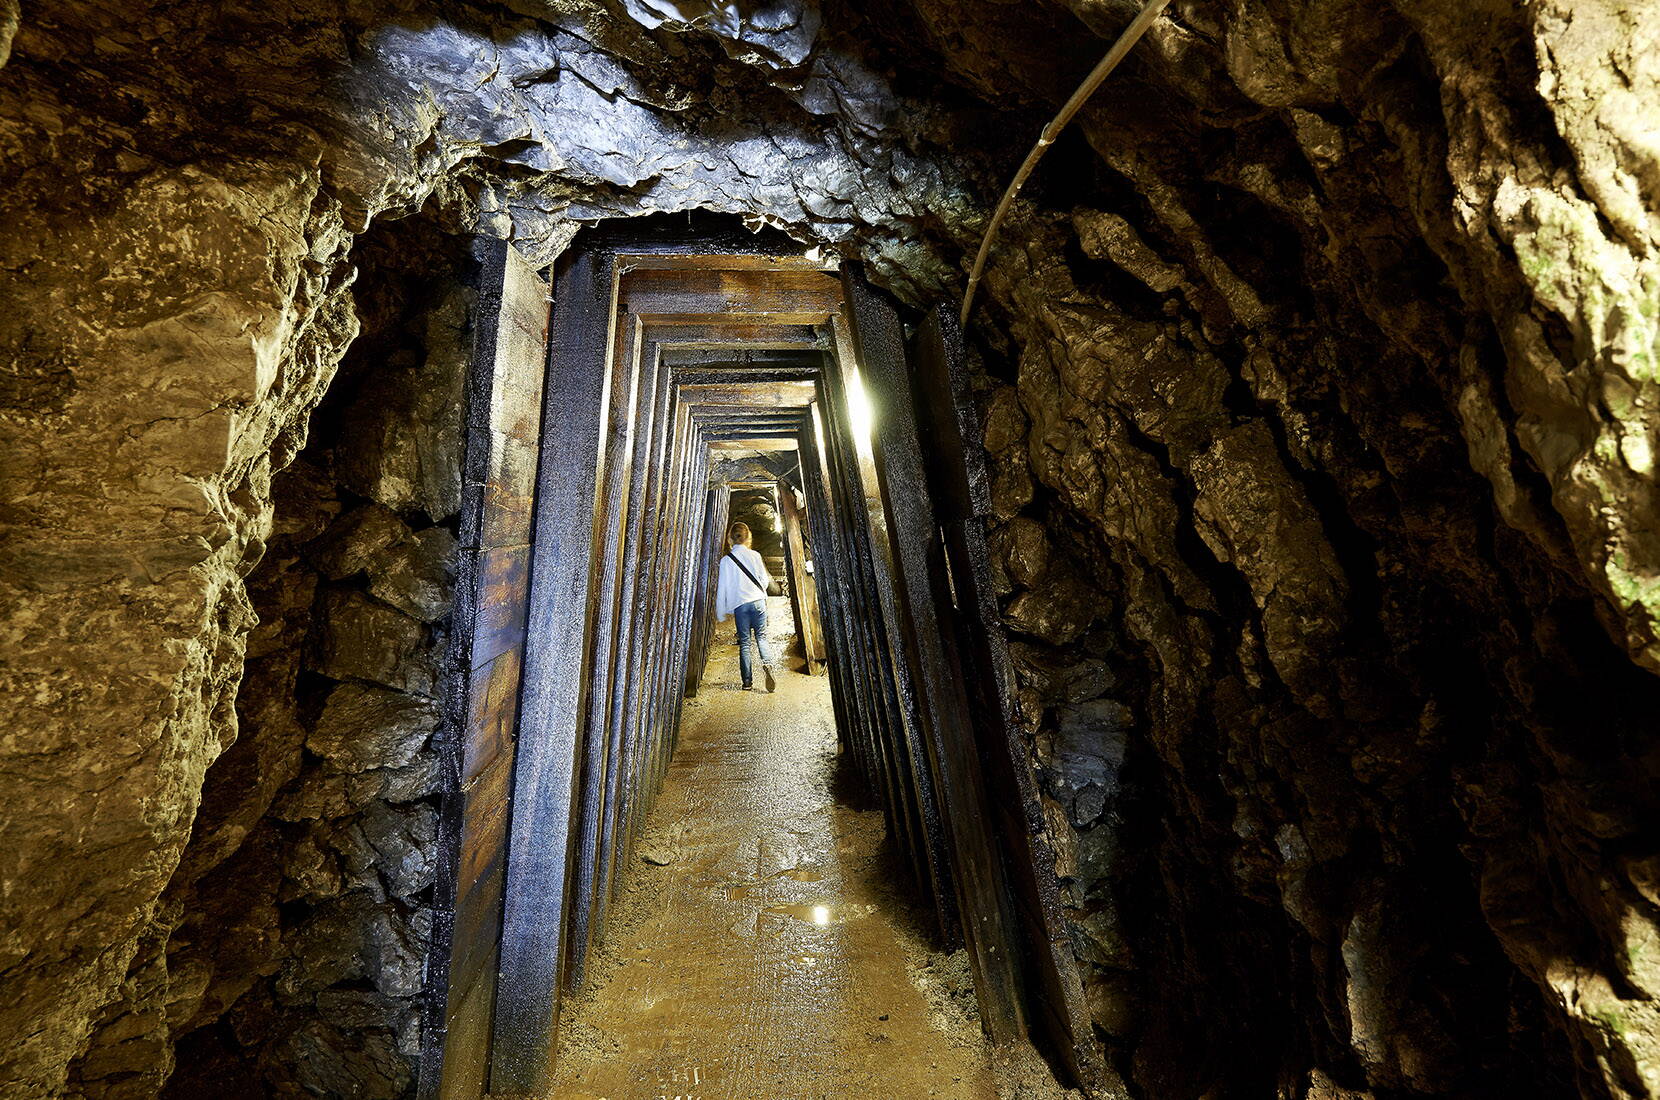 Escursione per famiglie alle Miniere di sale di Bex. Tornate indietro nel tempo e seguite le orme dei minatori alla ricerca dell'«oro bianco». Scoprite le impressionanti imprese che i nostri antenati hanno compiuto interamente a mano nell'ultima miniera di sale ancora in funzione in Svizzera.